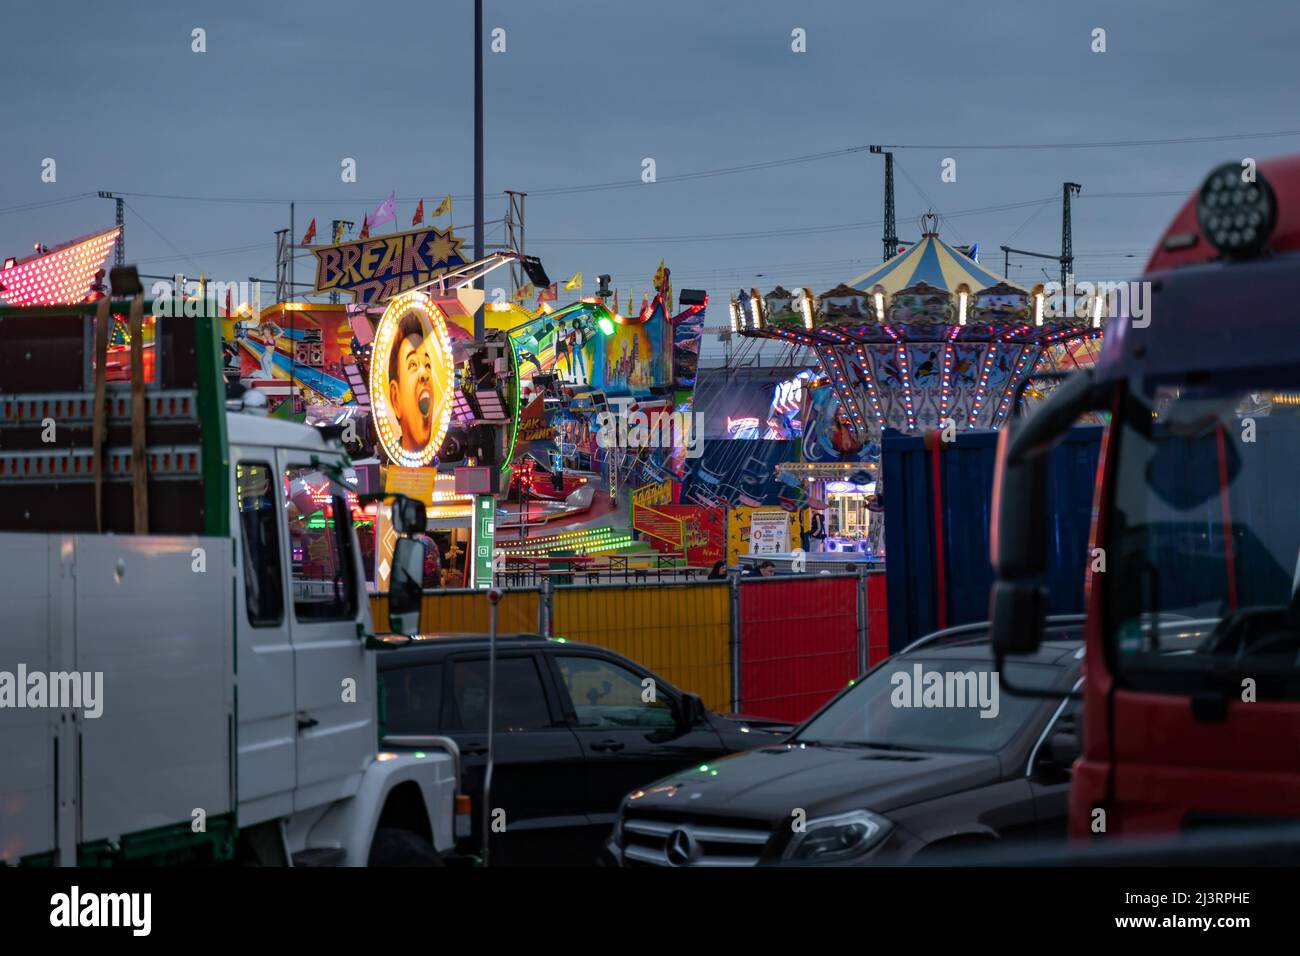 Funfair Fahrten auf dem Messegelände in der Stadt. Beleuchtete Attraktionen für Freizeitaktivitäten. Blick vom Parkplatz auf das Festivalgelände. Stockfoto